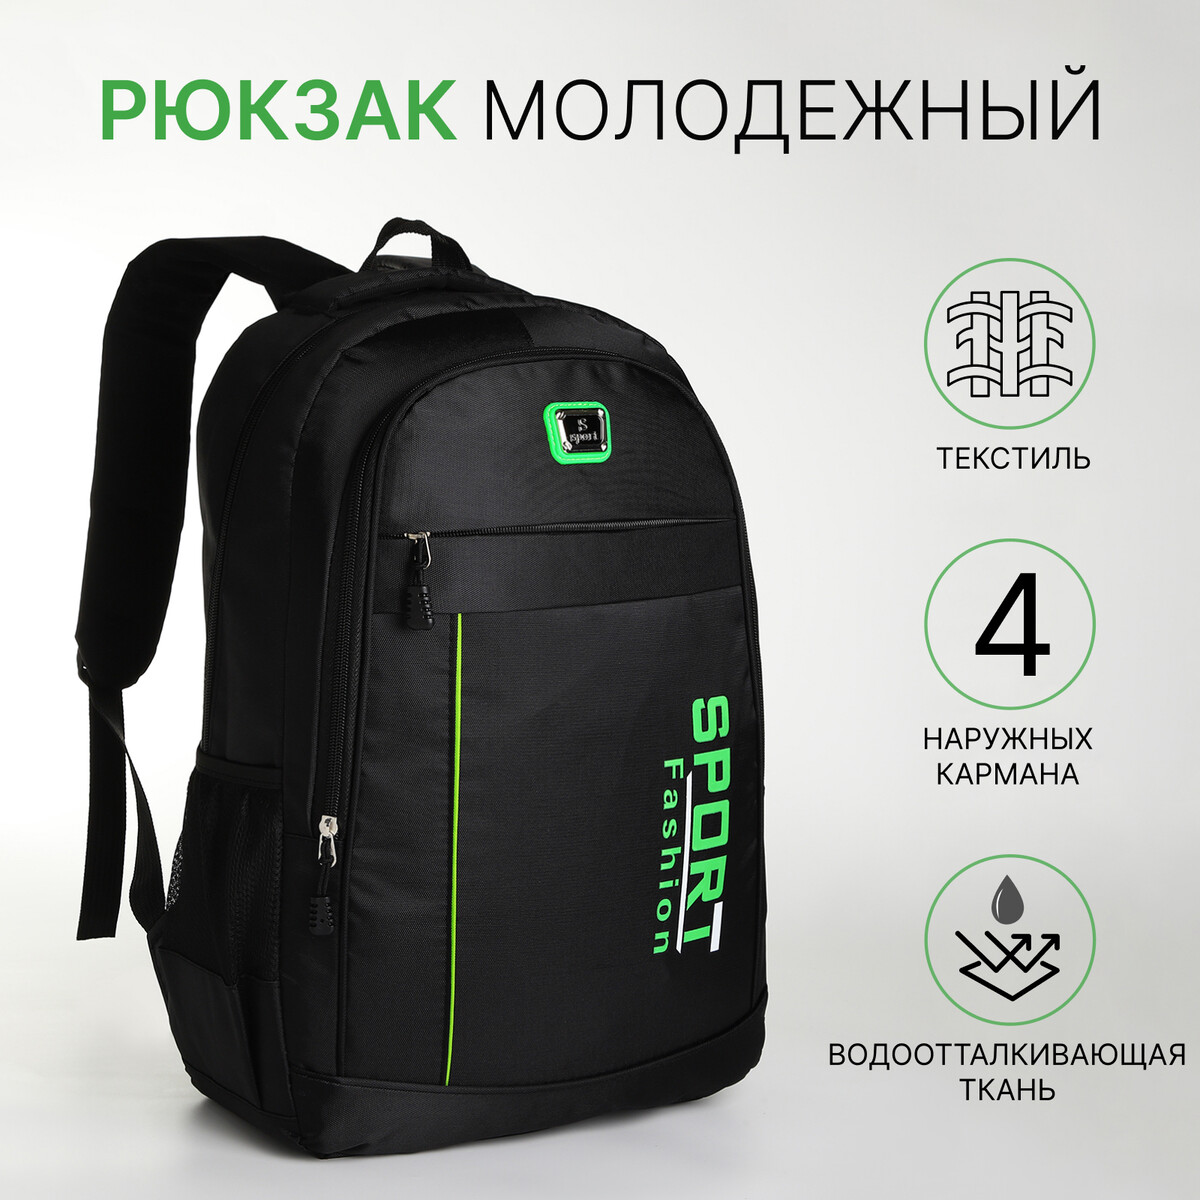 Рюкзак молодежный на молнии, 4 кармана, цвет черный/зеленый рюкзак молодежный из текстиля на молнии 3 кармана сумка держатель для чемодана зеленый